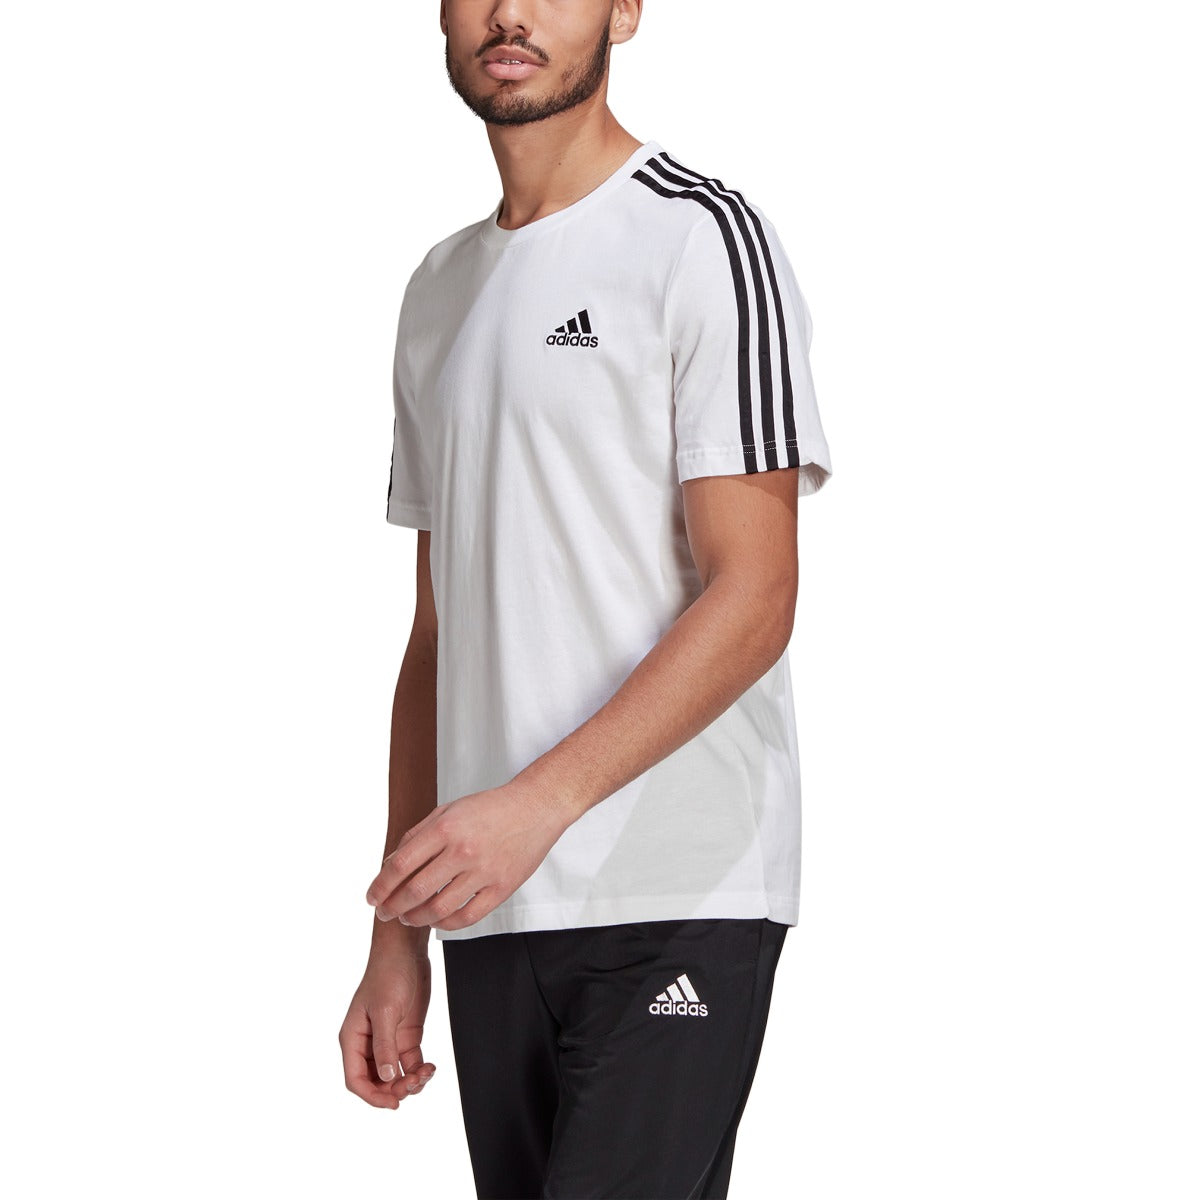 3S – White Adidas Tee NZ RYOS Ess